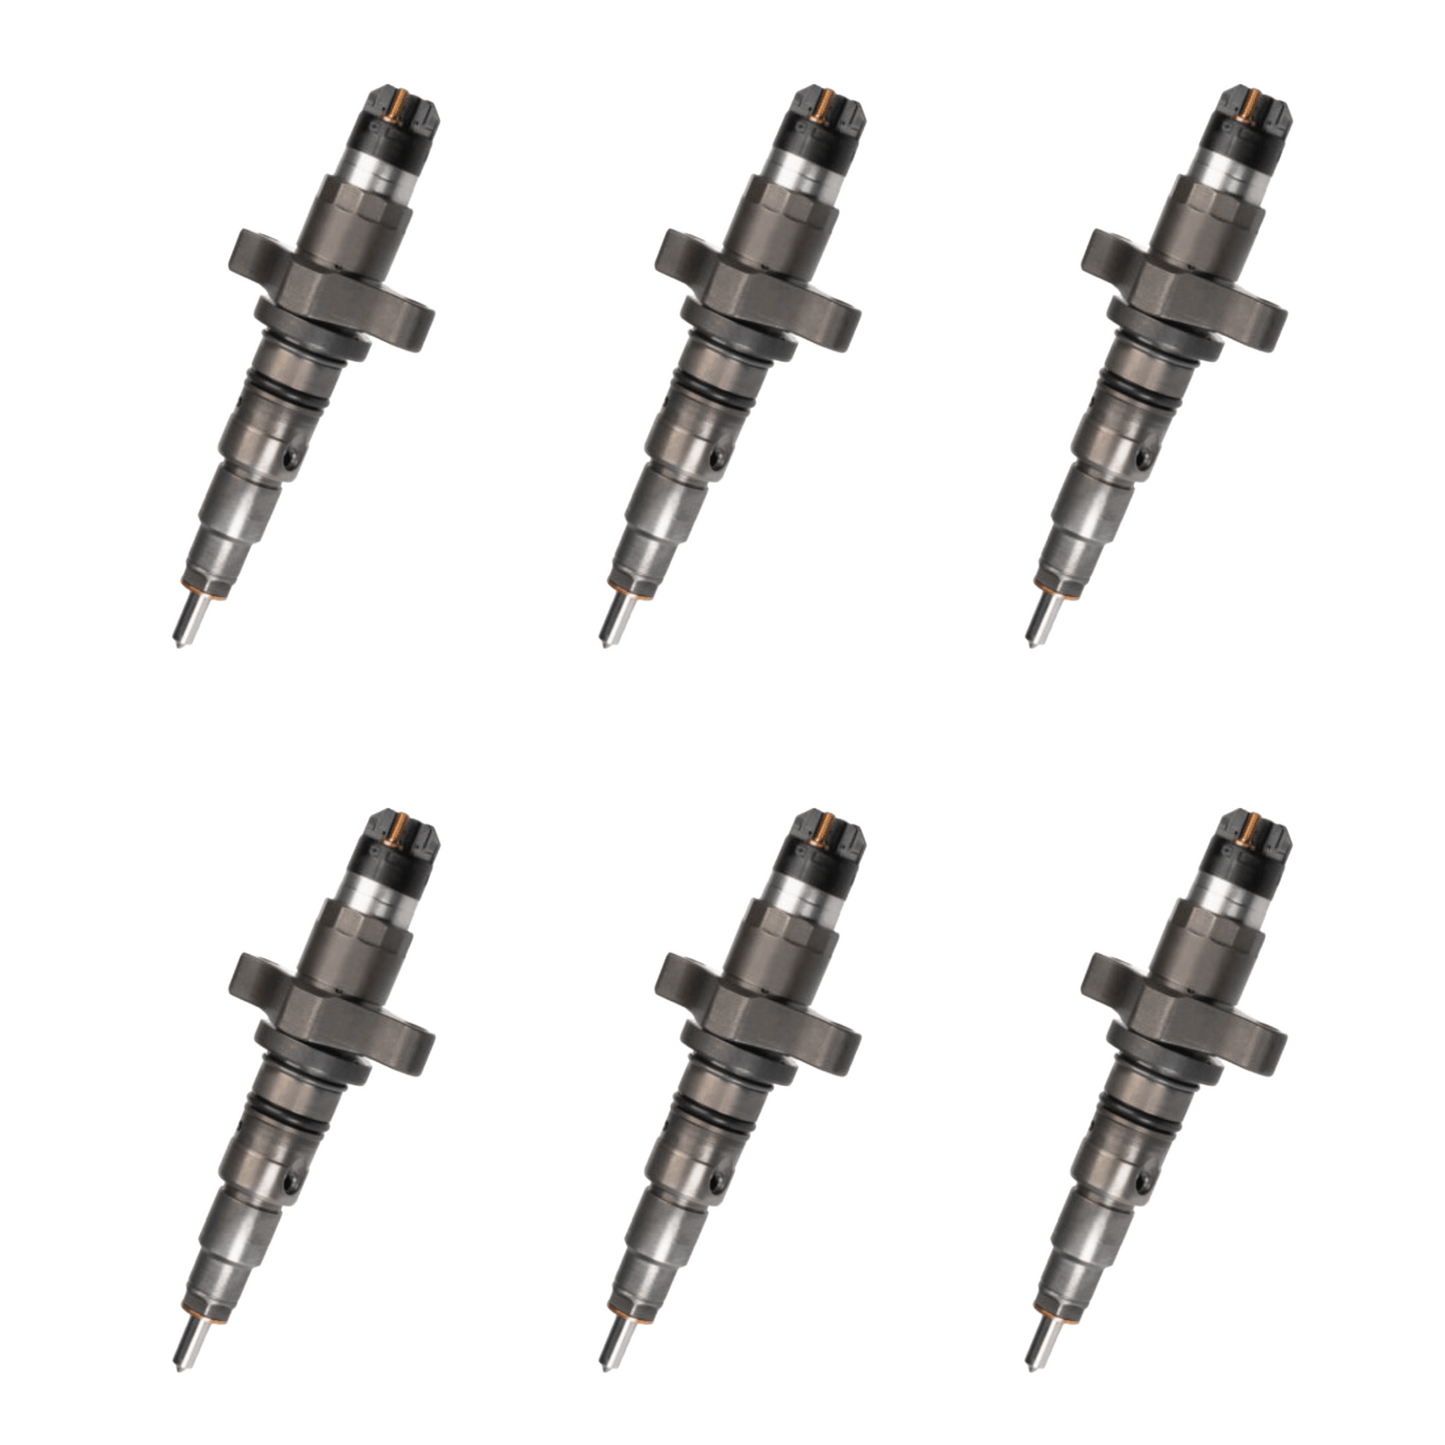 2003-2004.5 Cummins 5.9 Injectors